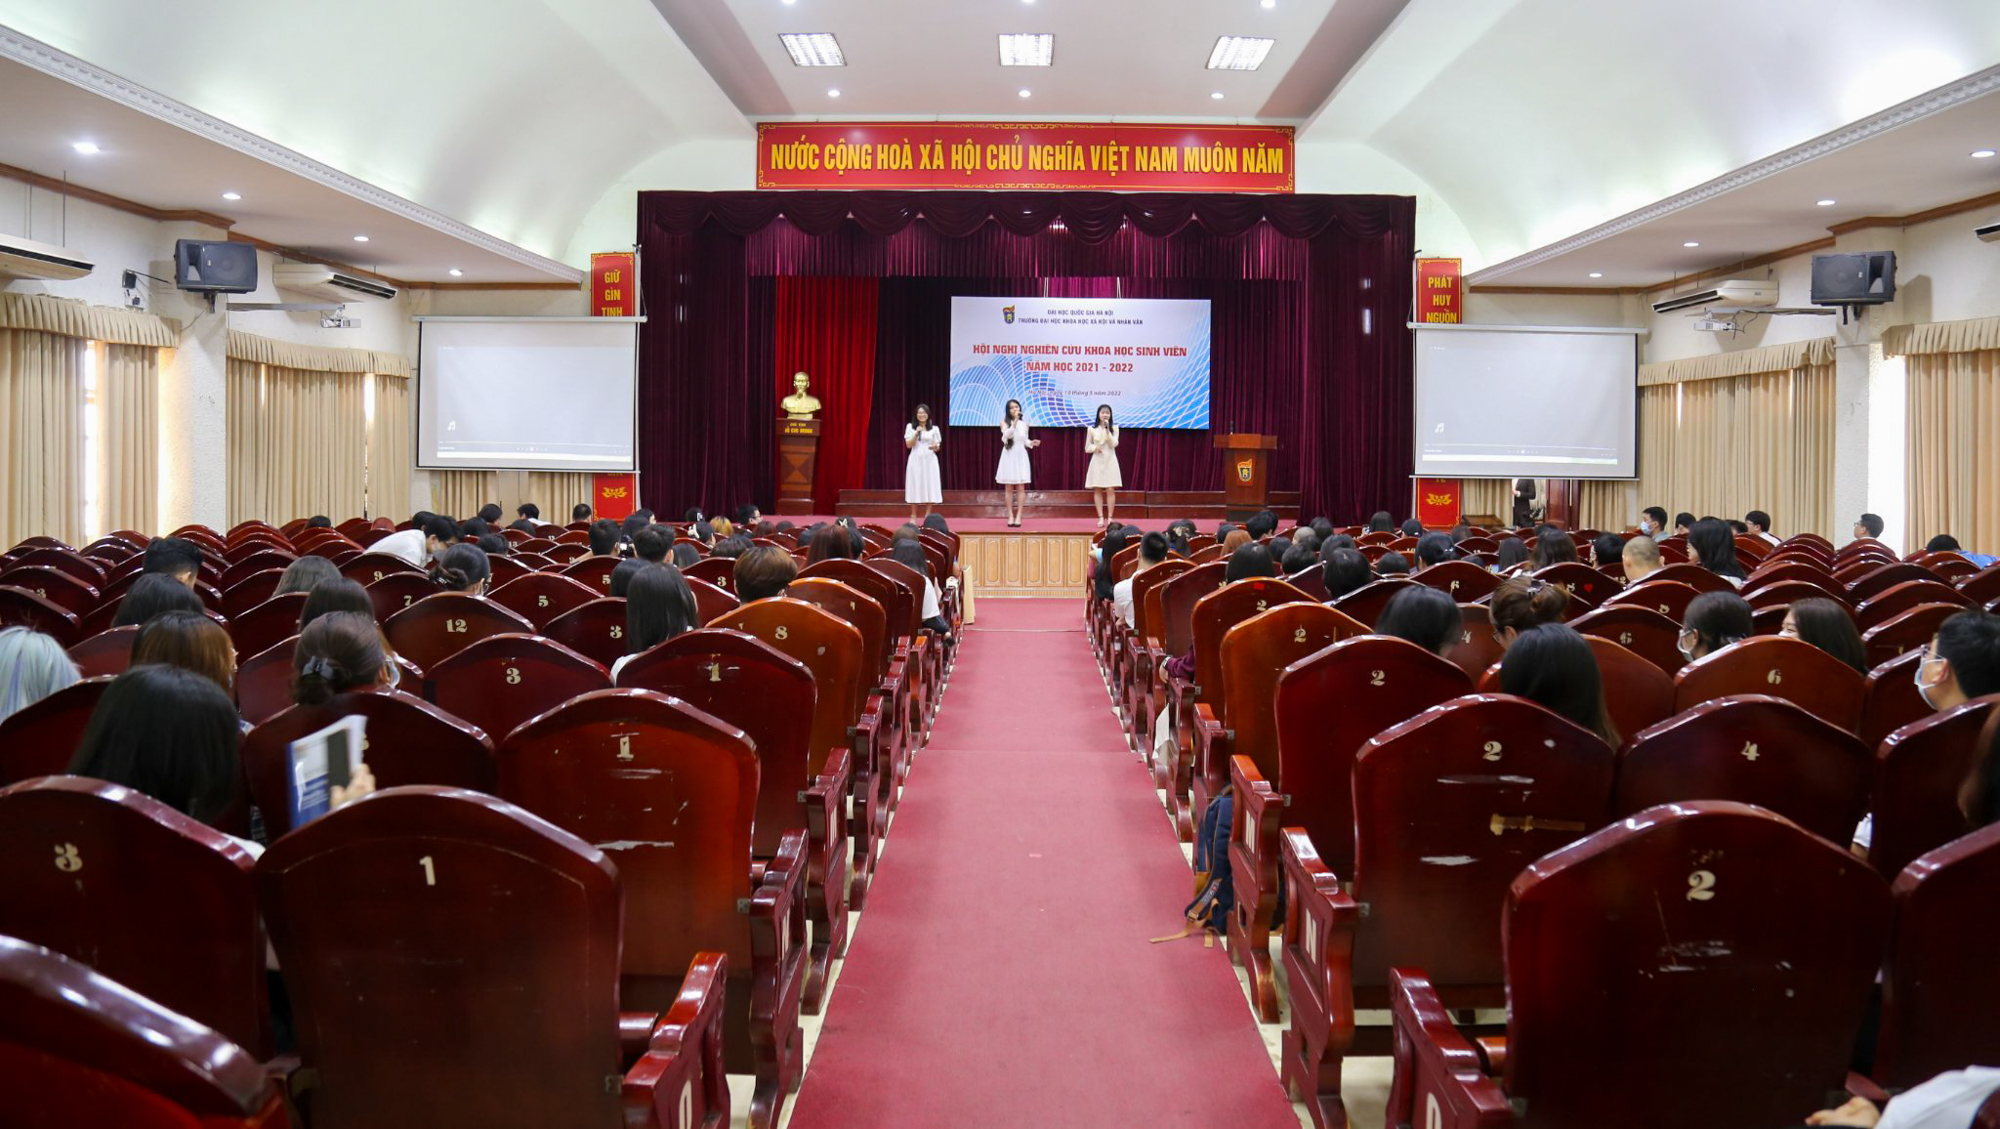 Trường được Bác Hồ thành lập ngay sau ngày Quốc khánh, nơi Tổng bí thư Nguyễn Phú Trọng từng theo học - Ảnh 9.